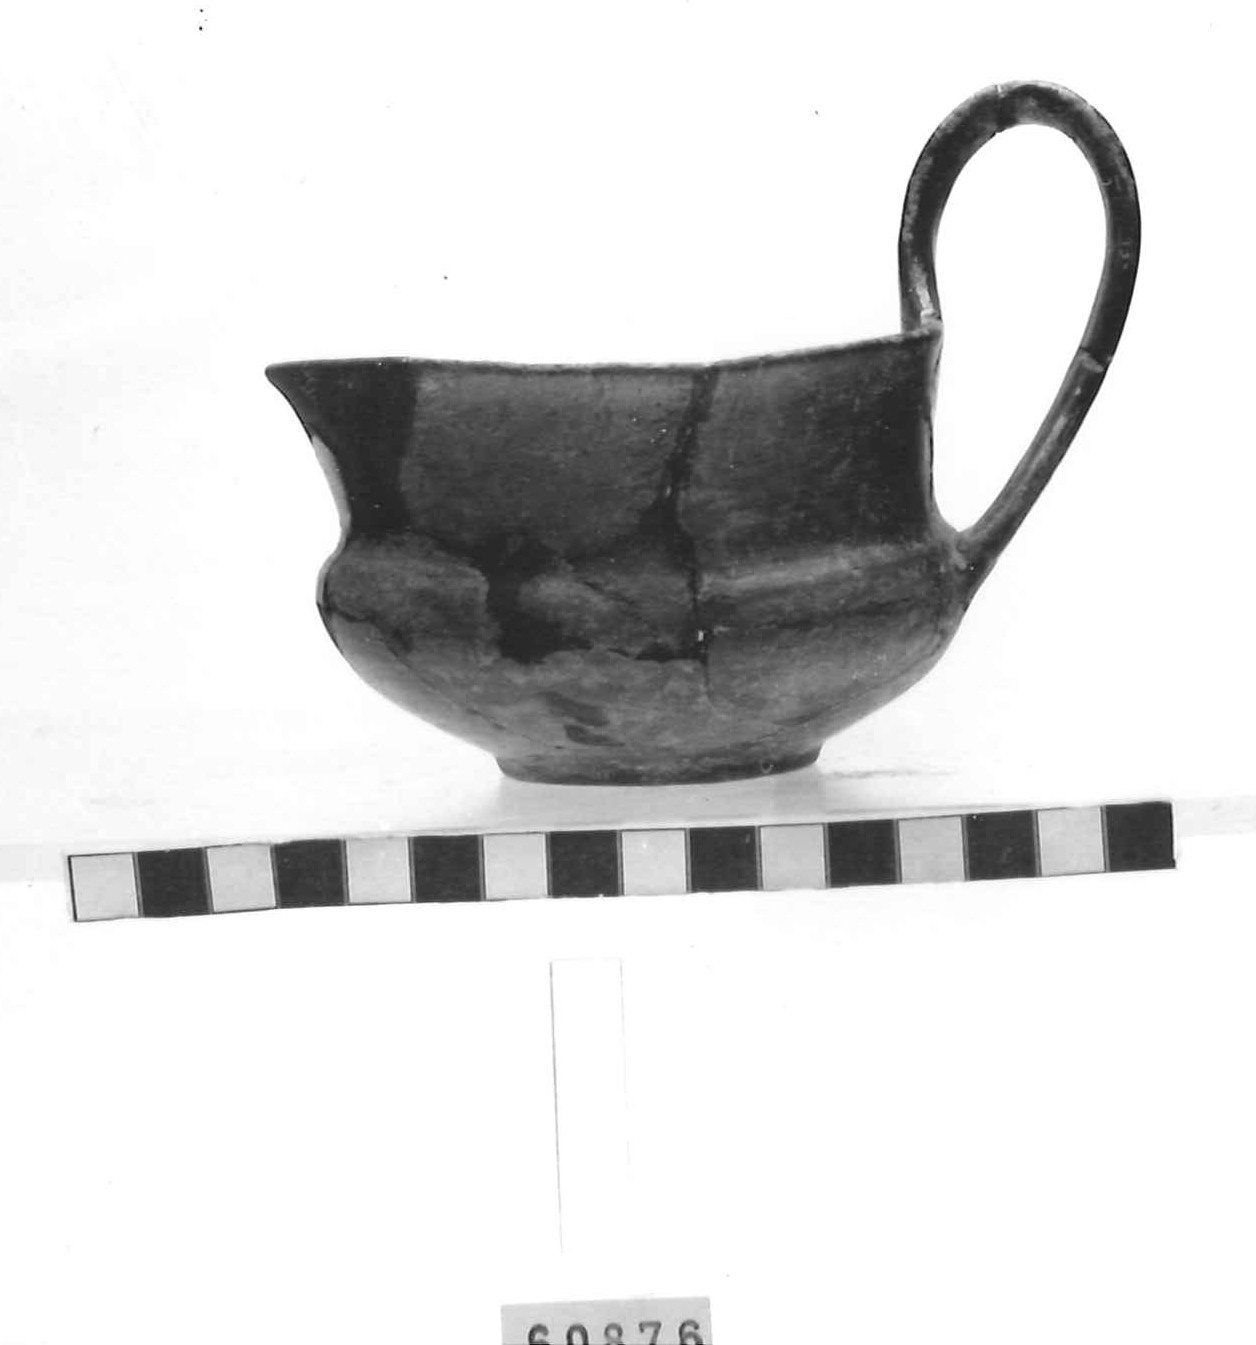 kyathos - Piceno III (secc. VII-VI a.C)